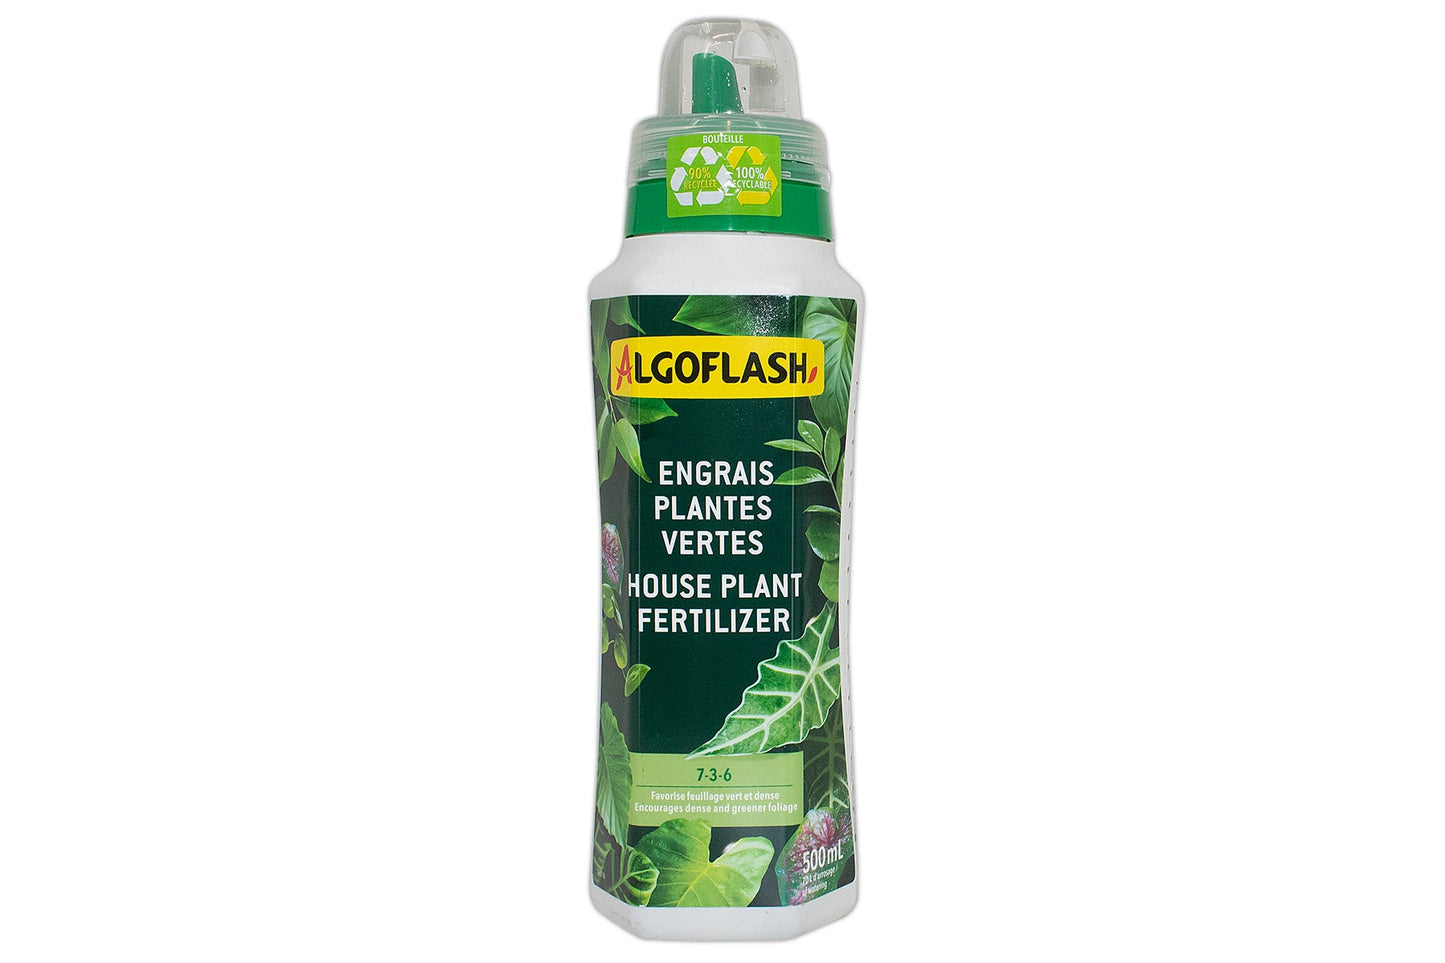 Algoflash liquid fertilizer for House plant 7-3-6